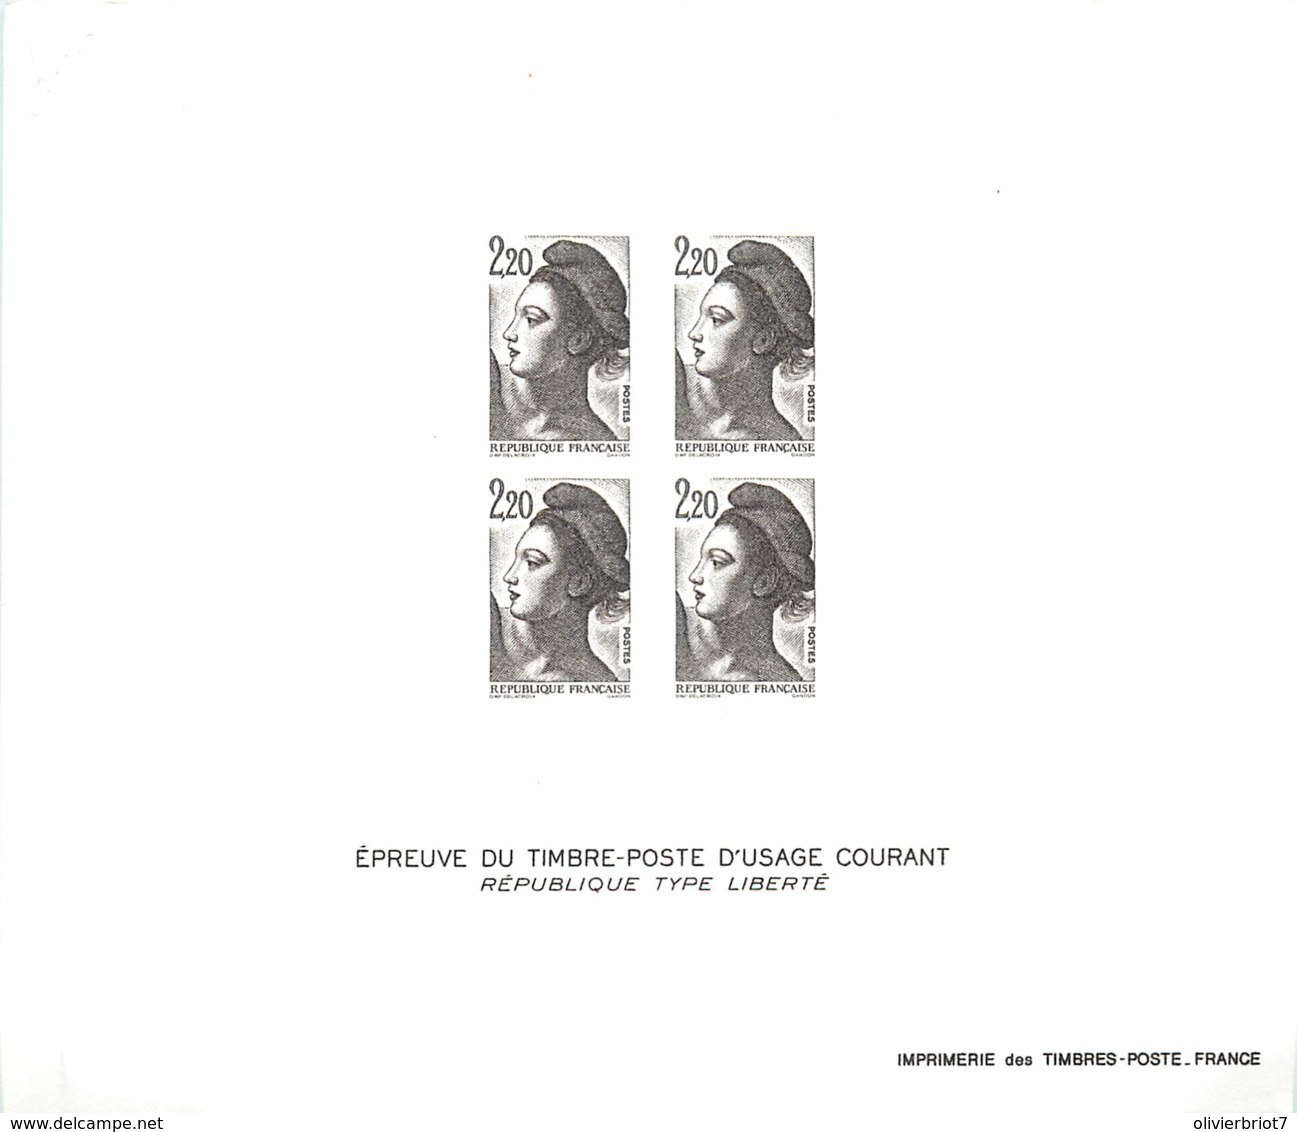 France - Epreuve De Luxe -Timbre Poste D'usage Courant Type Liberté 2.20 F - Documents De La Poste